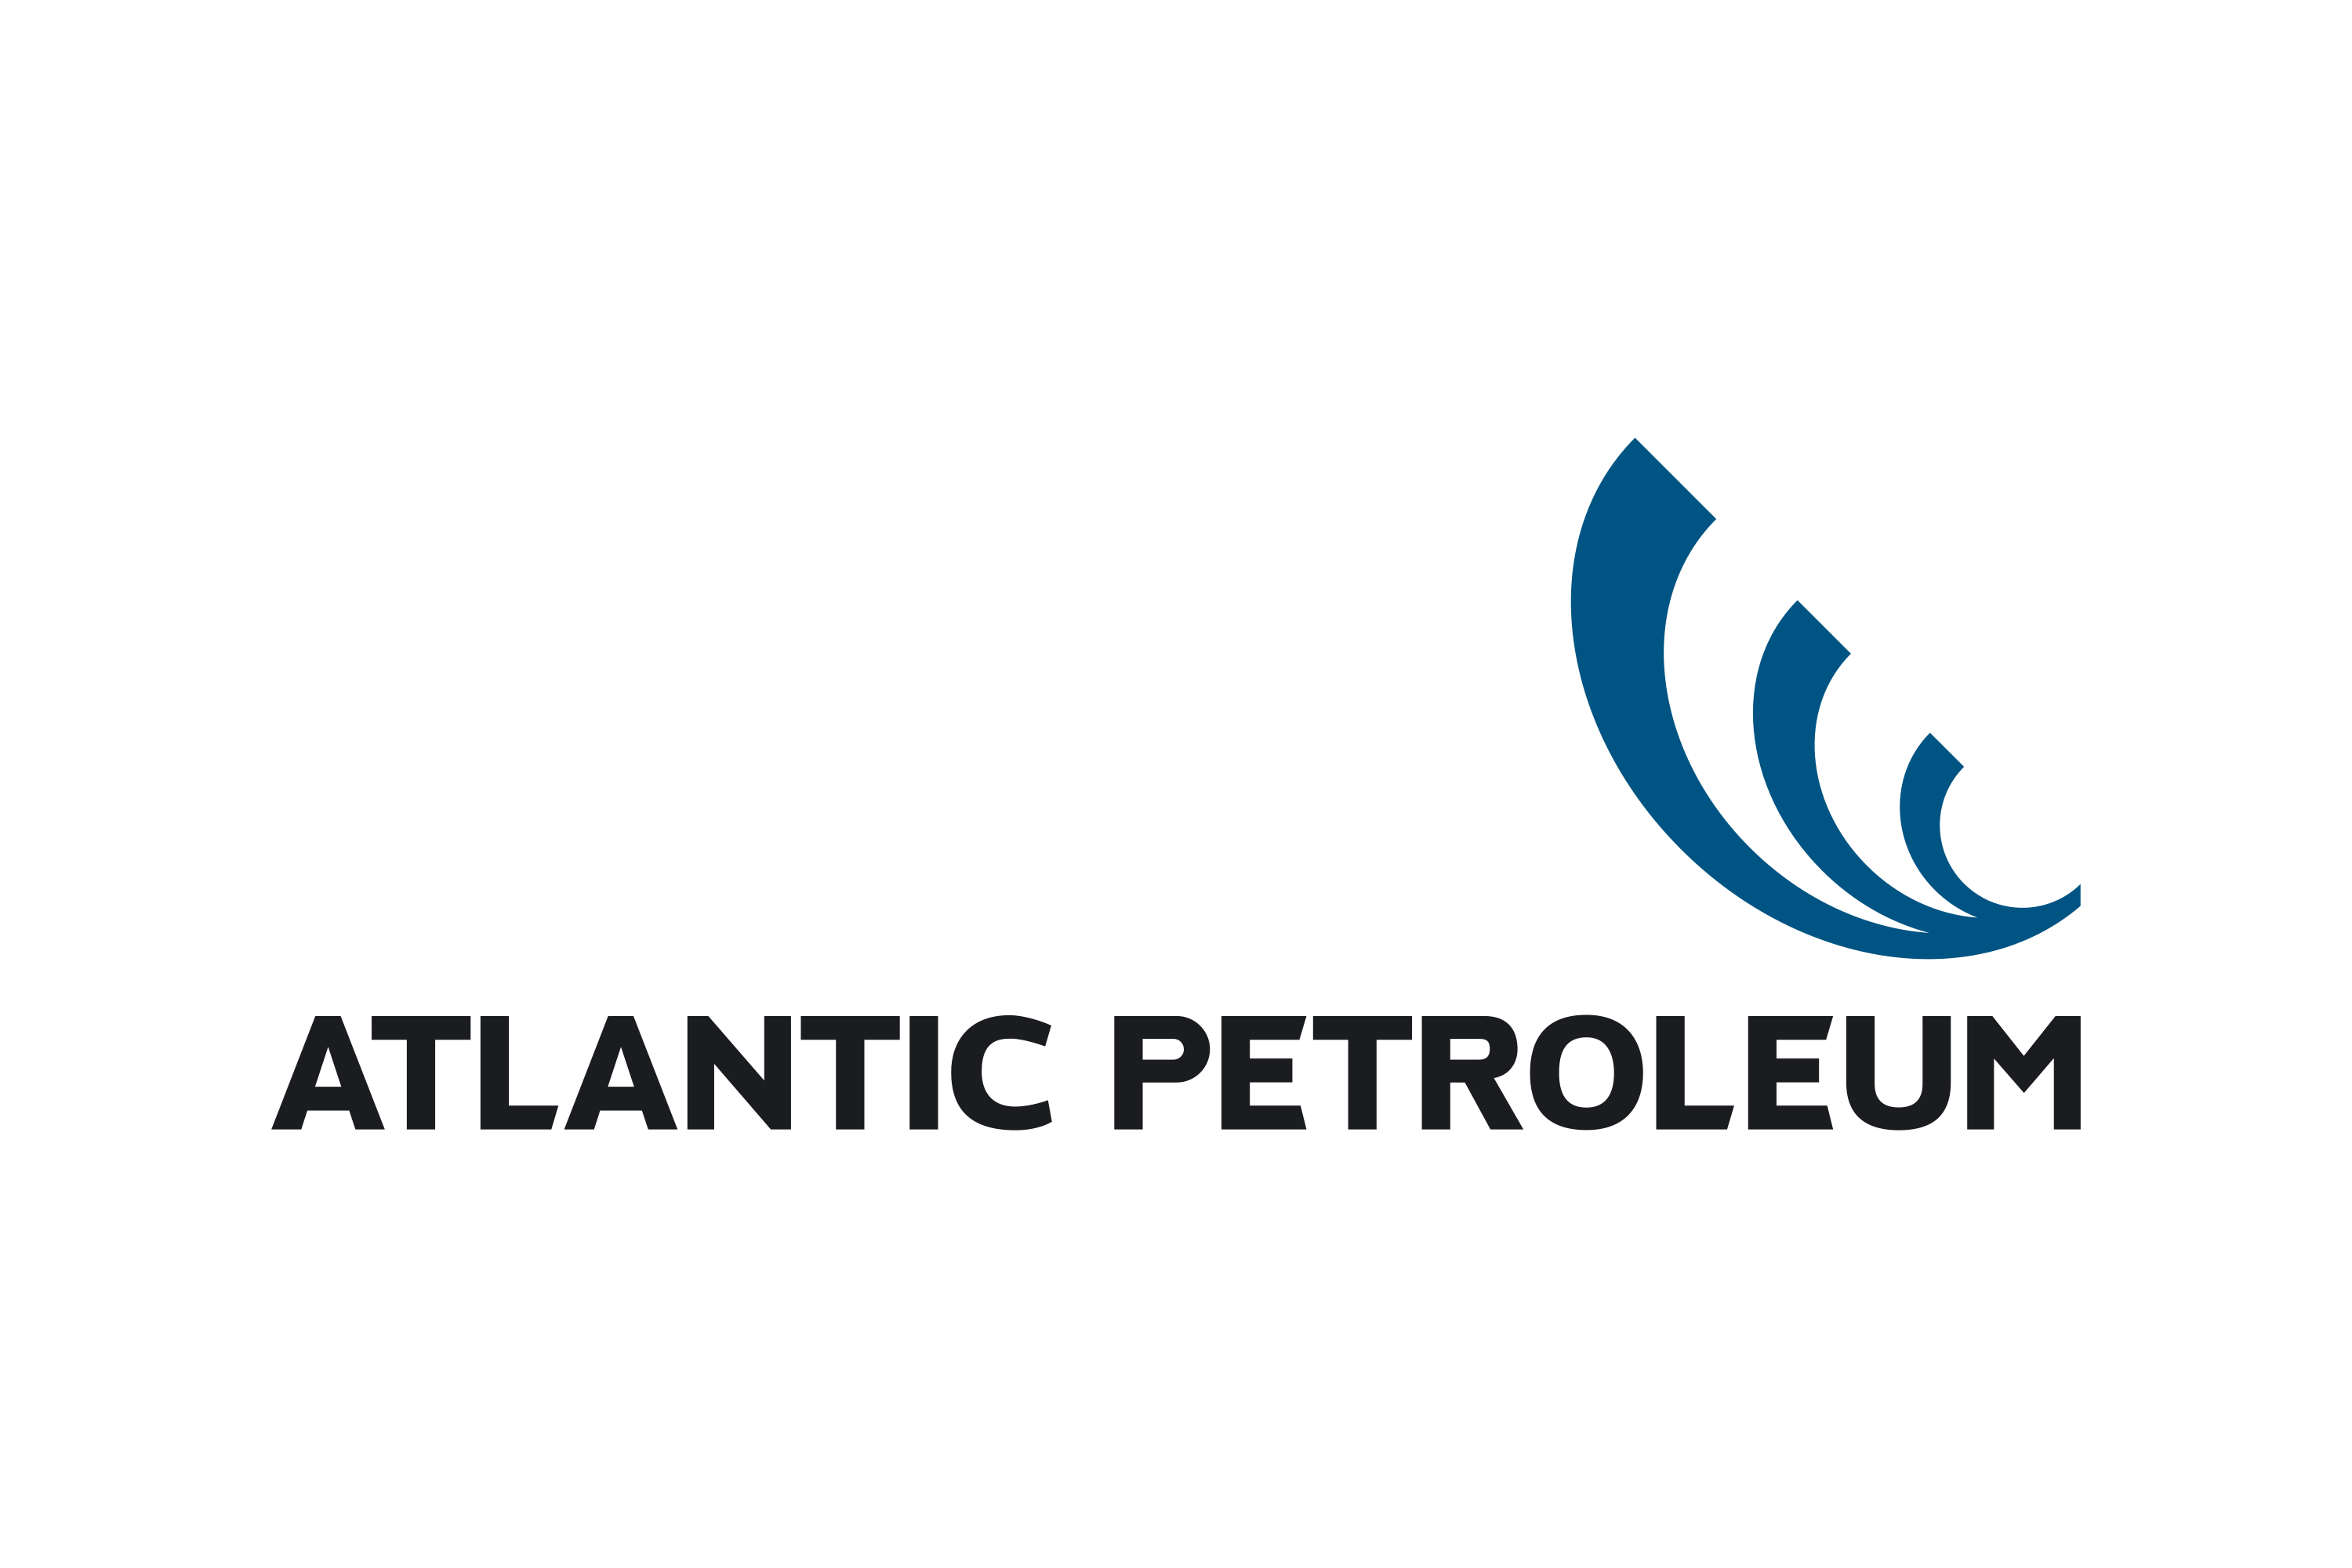 Atlantic Petroleum